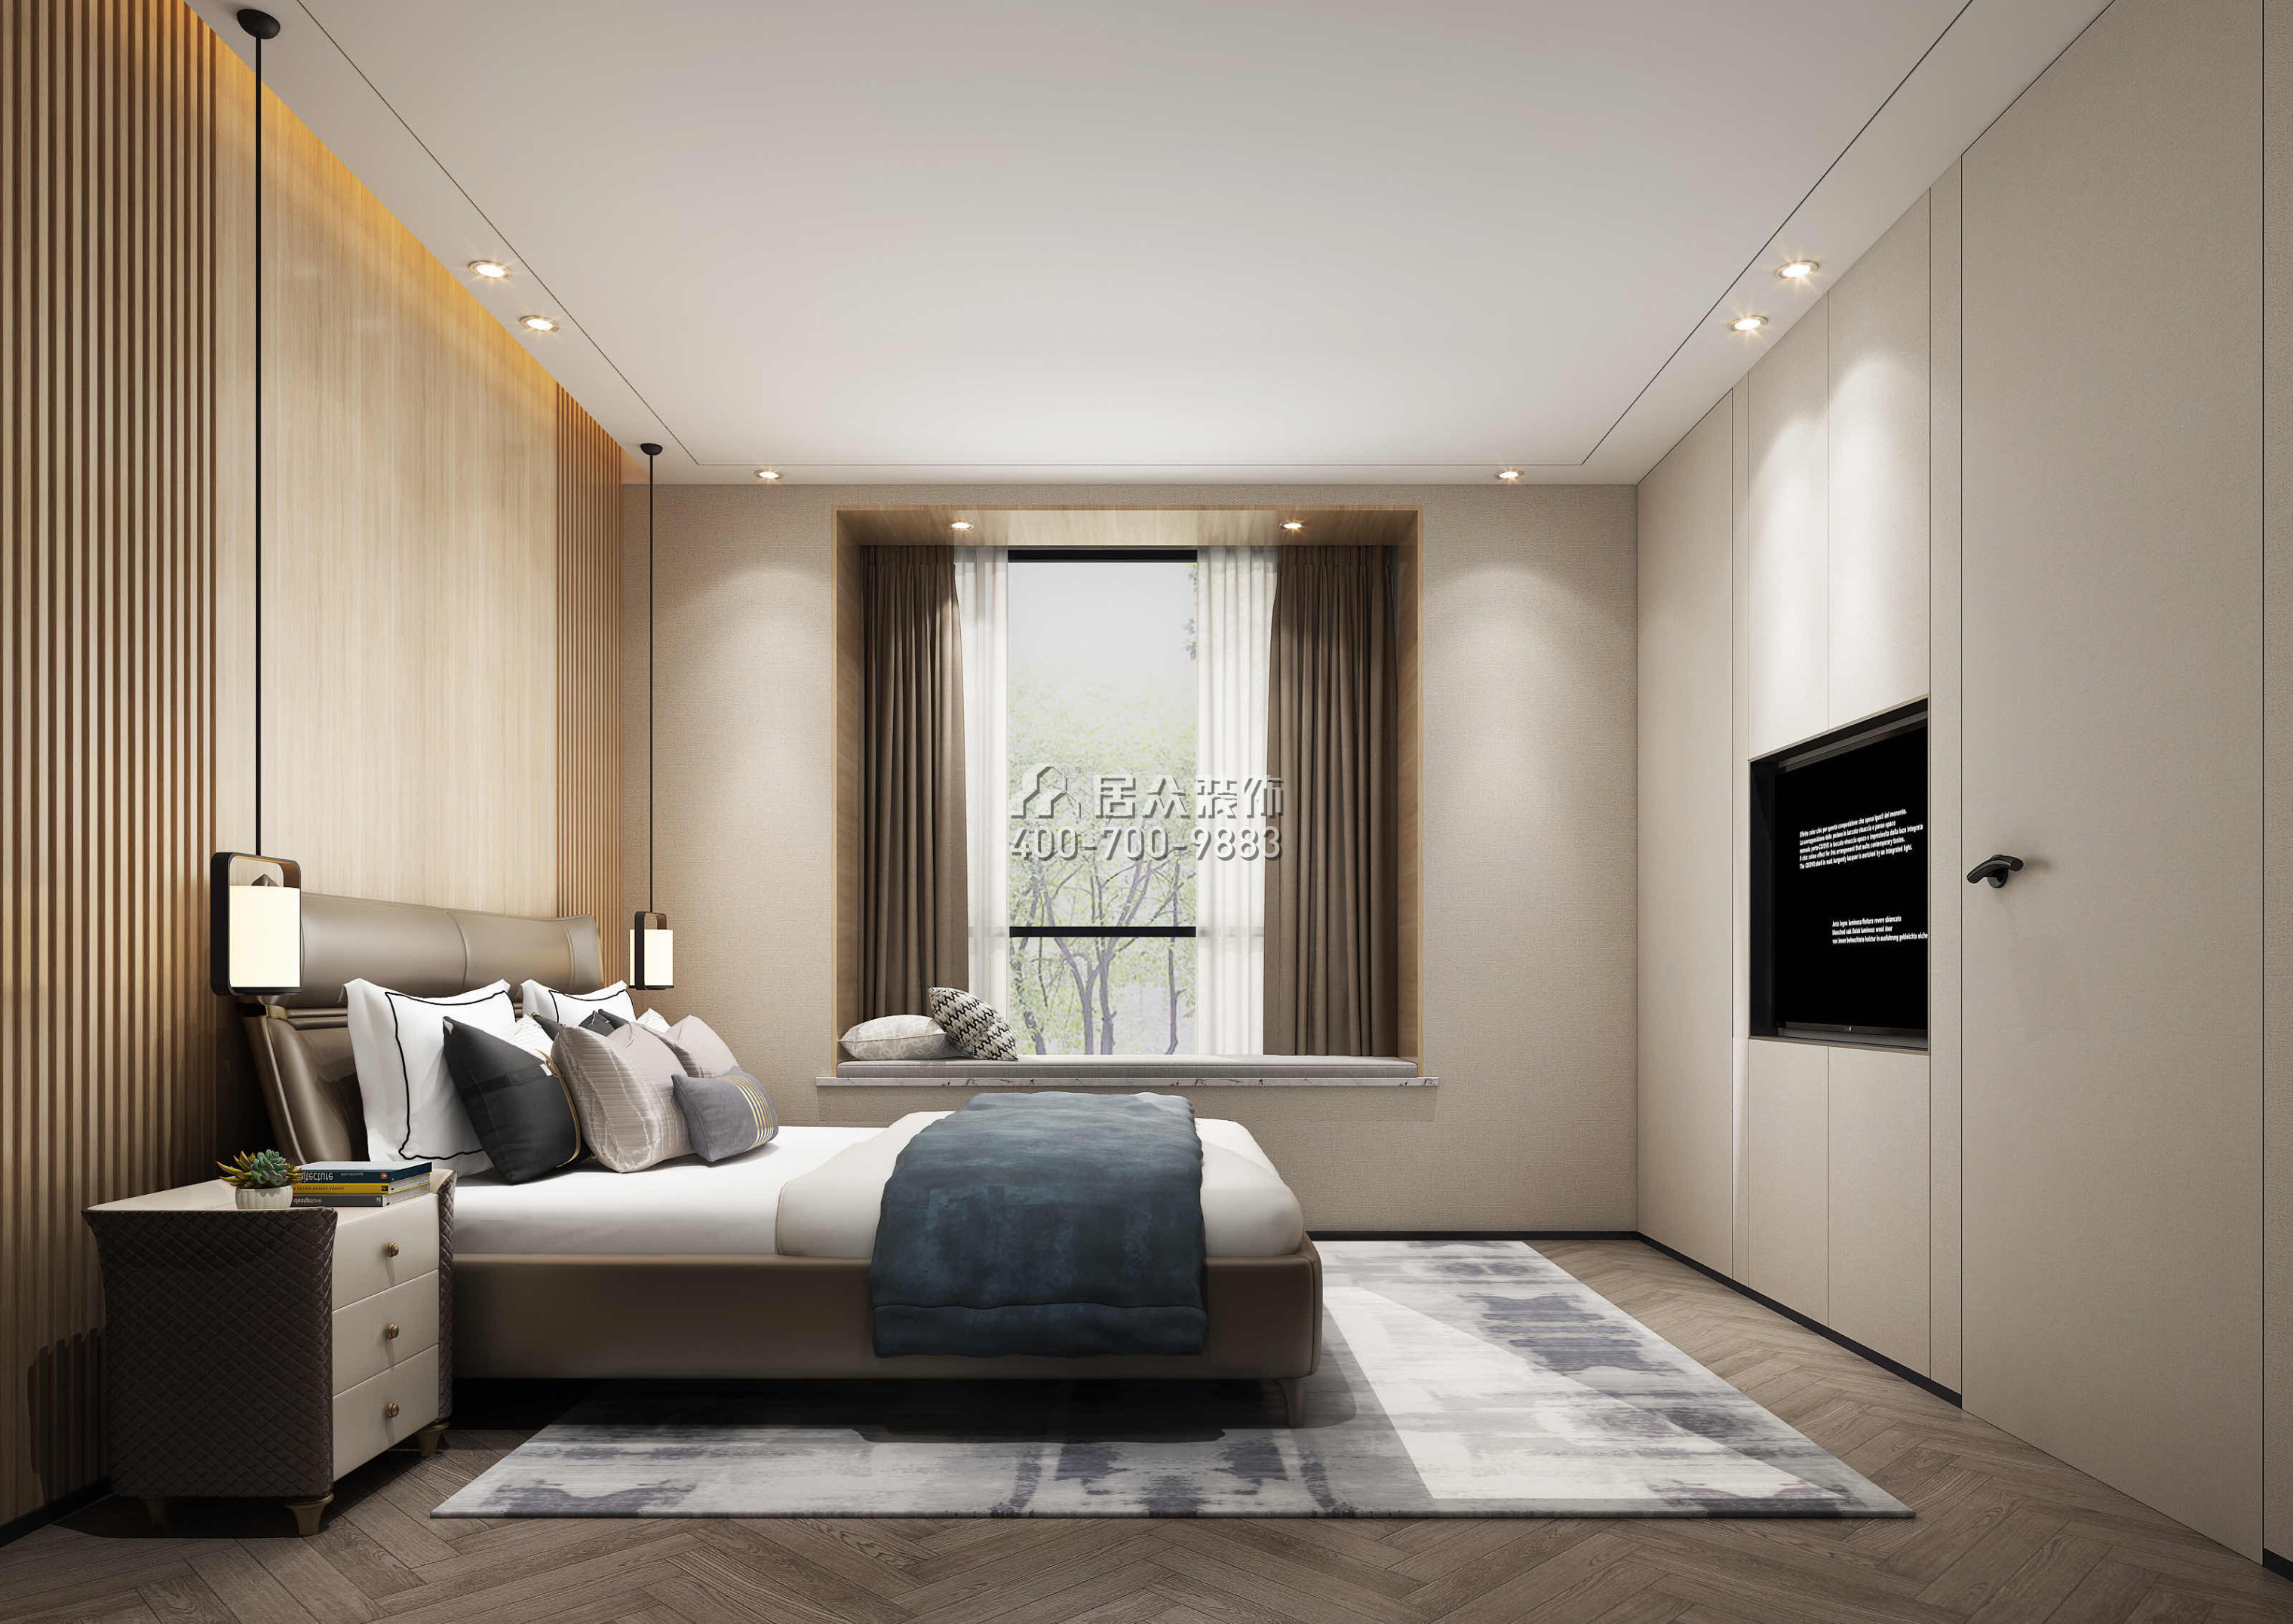 海逸豪庭御峰500平方米现代简约风格别墅户型卧室装修效果图